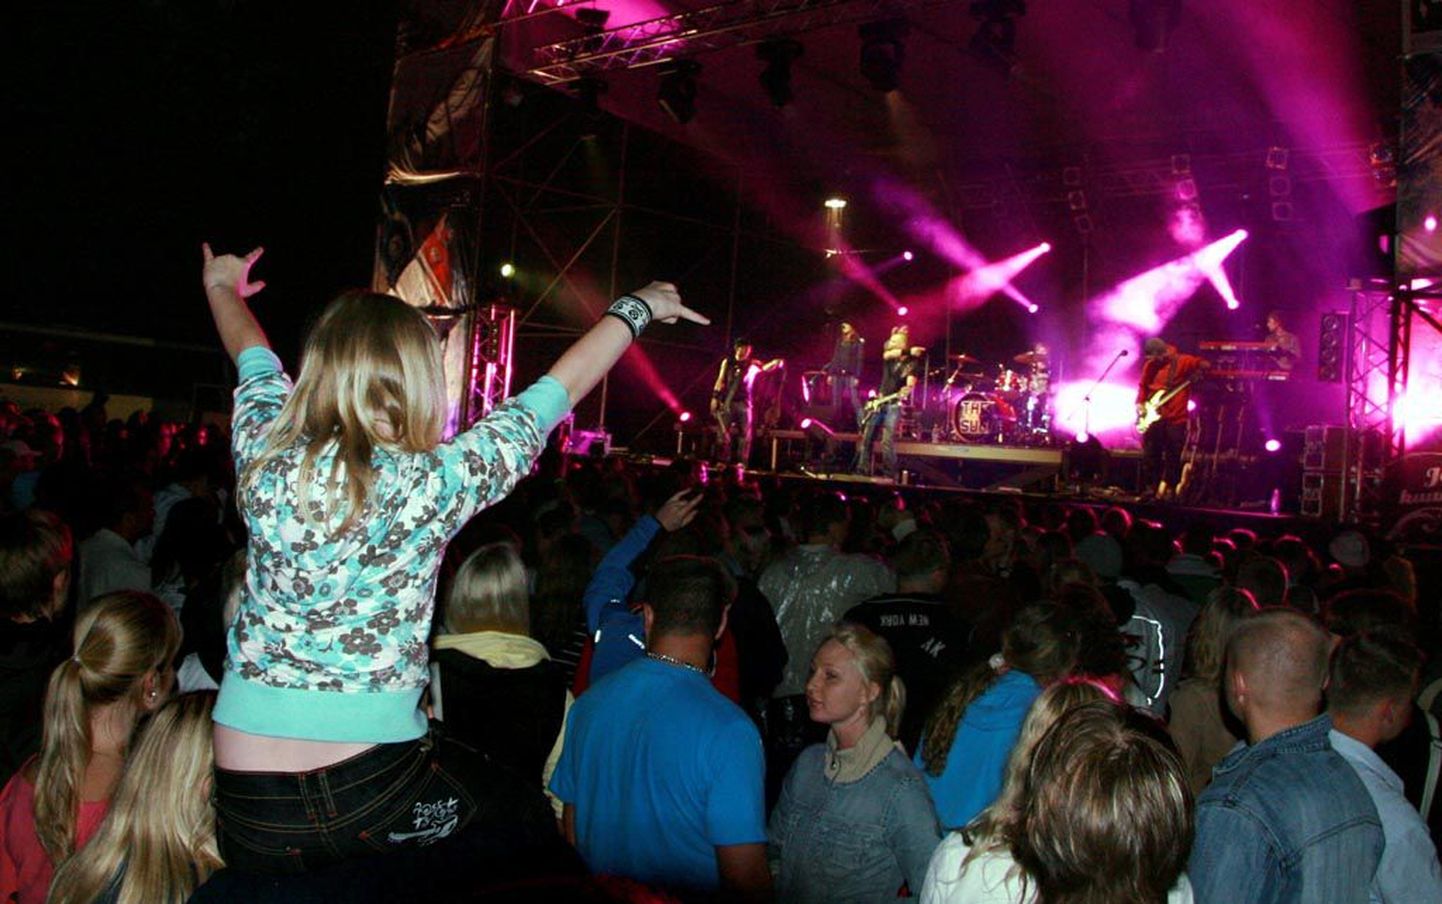 Enne jaanipäeva, mil rohi on kõrgeks kasvanud, on paljud noored Pärnusse suve algust tähistama tulnud. Sel aastal festivali “Tere, Pärnu suvi!” aga ei toimu.